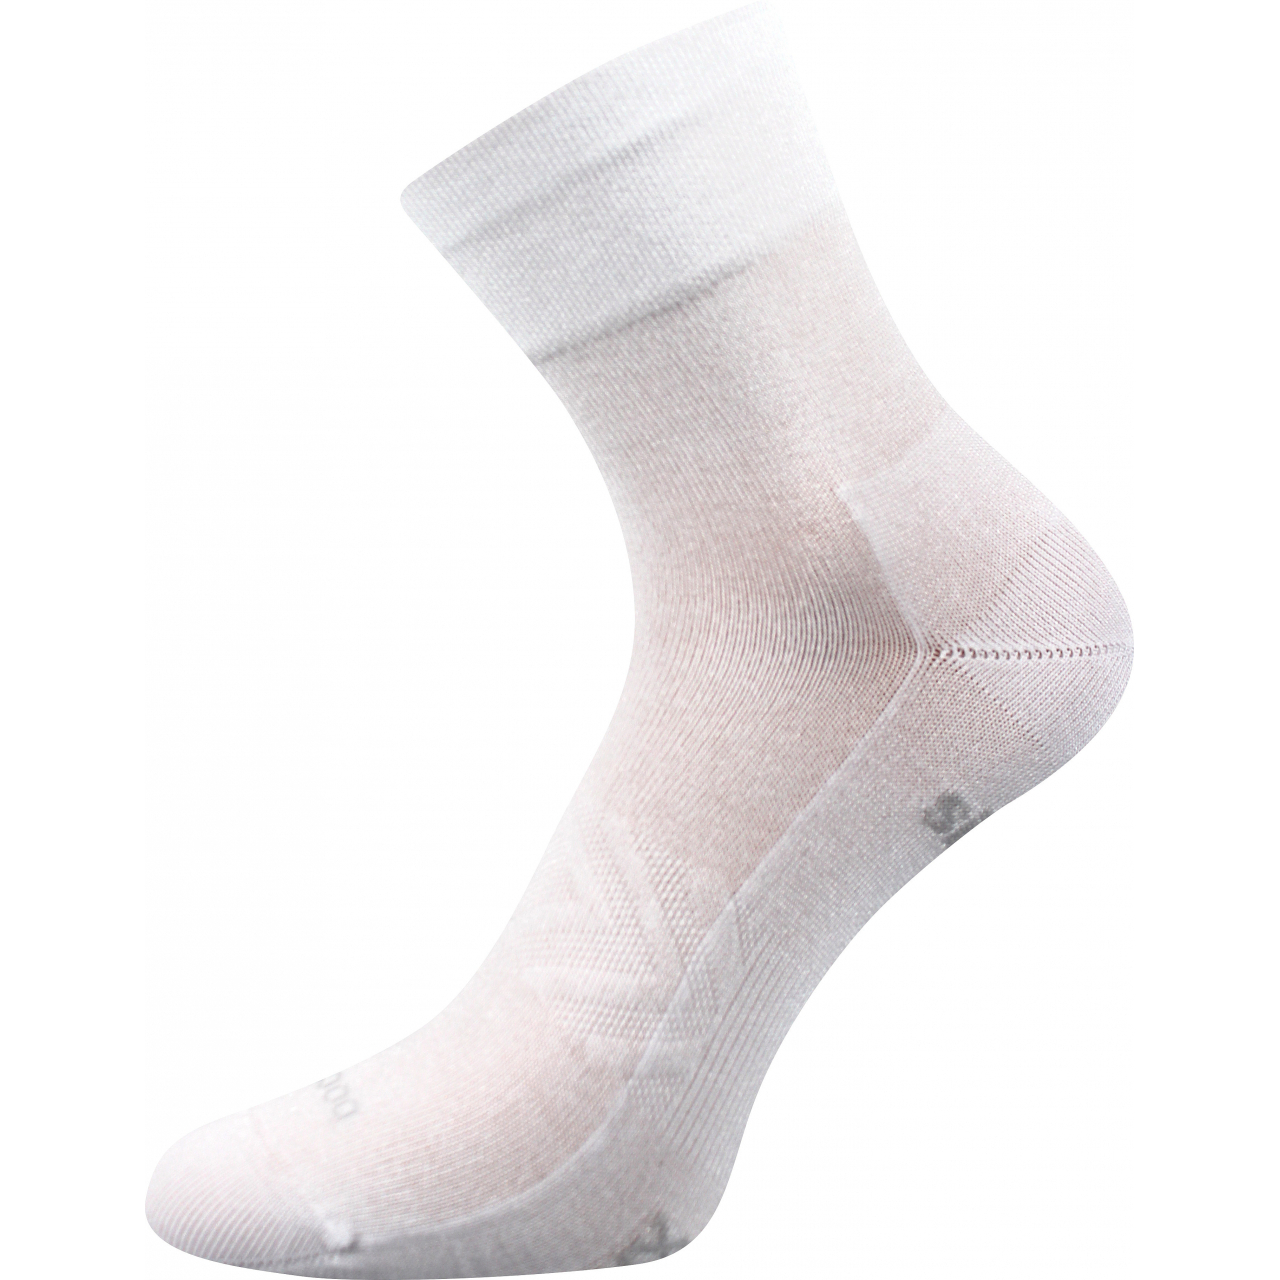 Ponožky sportovní unisex Voxx Baeron - bílé, 43-46